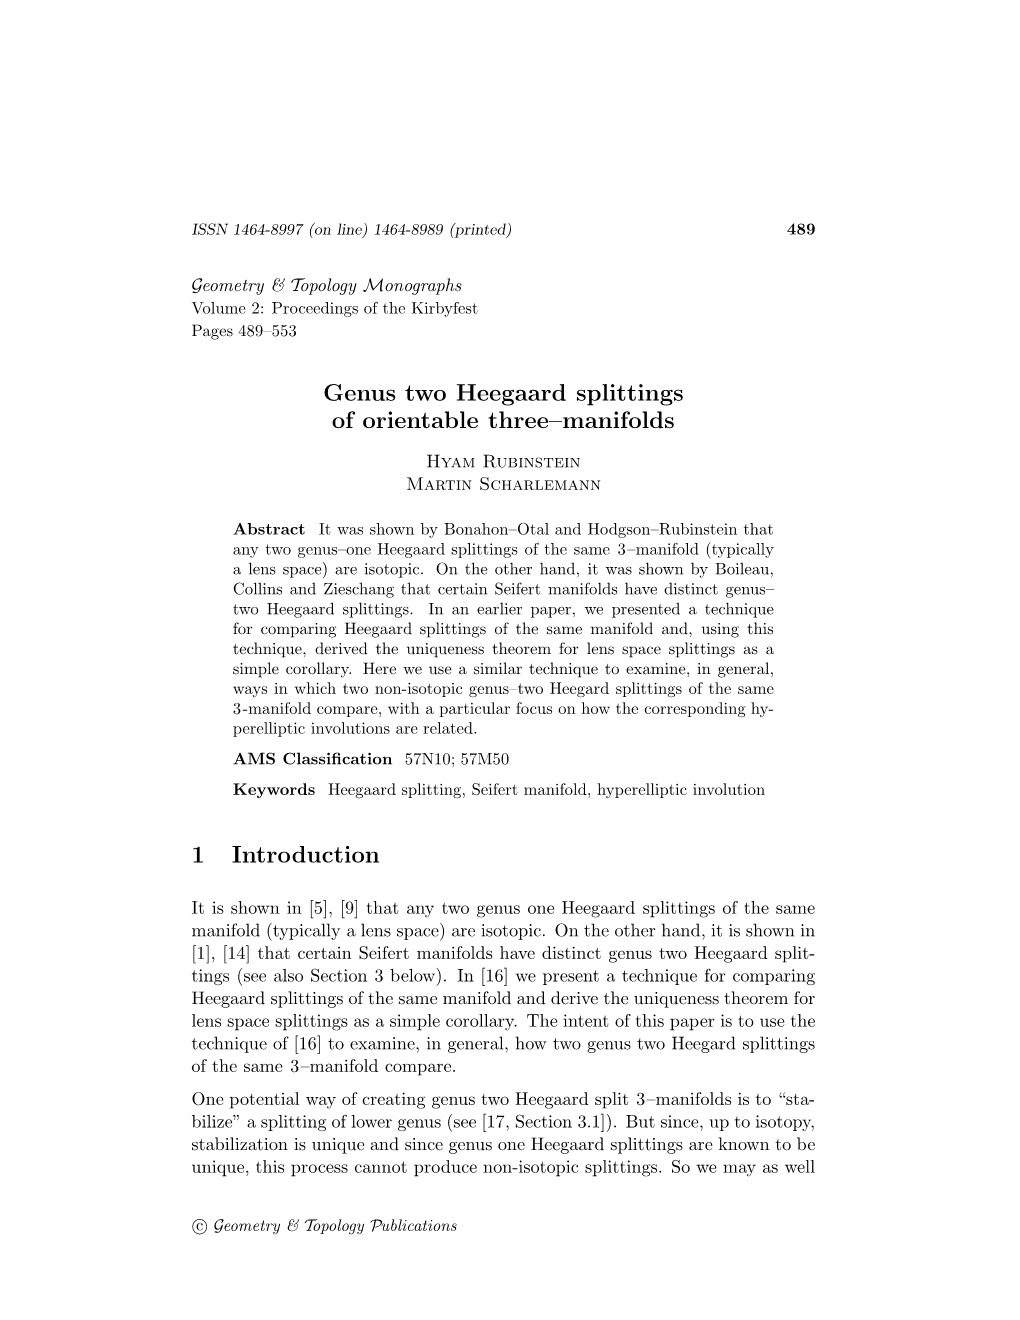 Genus Two Heegaard Splittings of Orientable Three–Manifolds 1